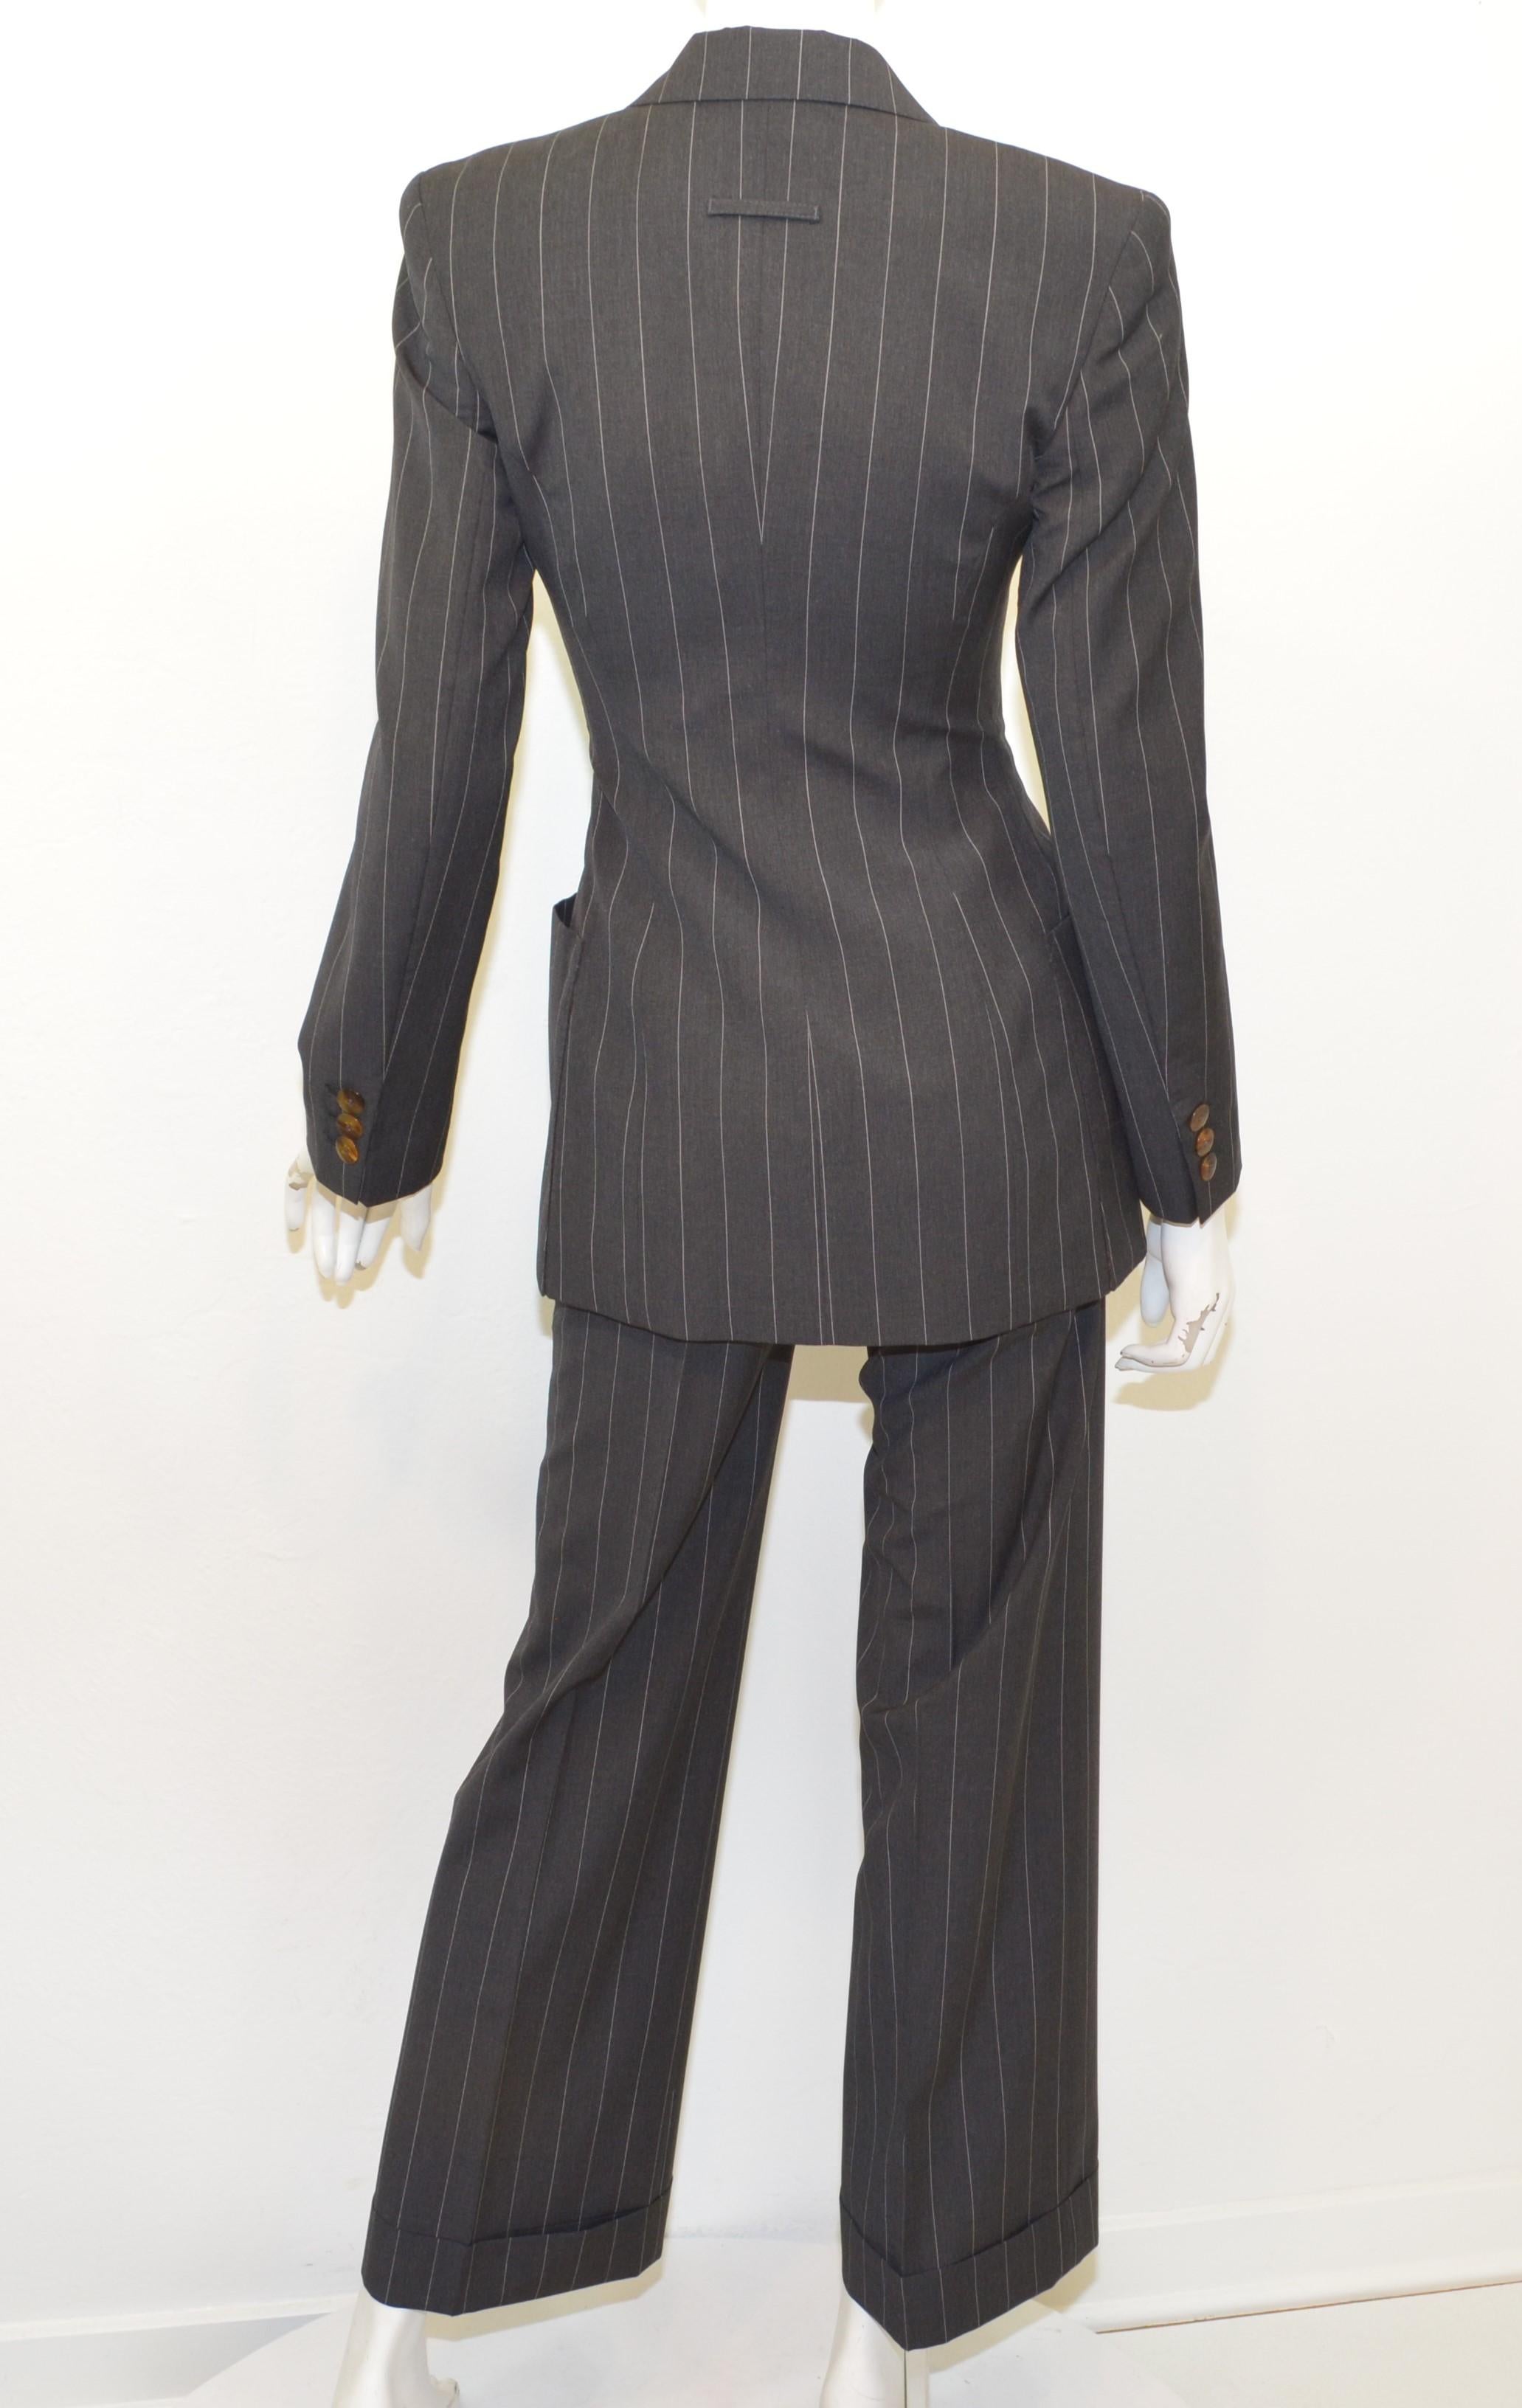 Black Jean Paul Gaultier Pinstripe Jacket and Pants Suit Set